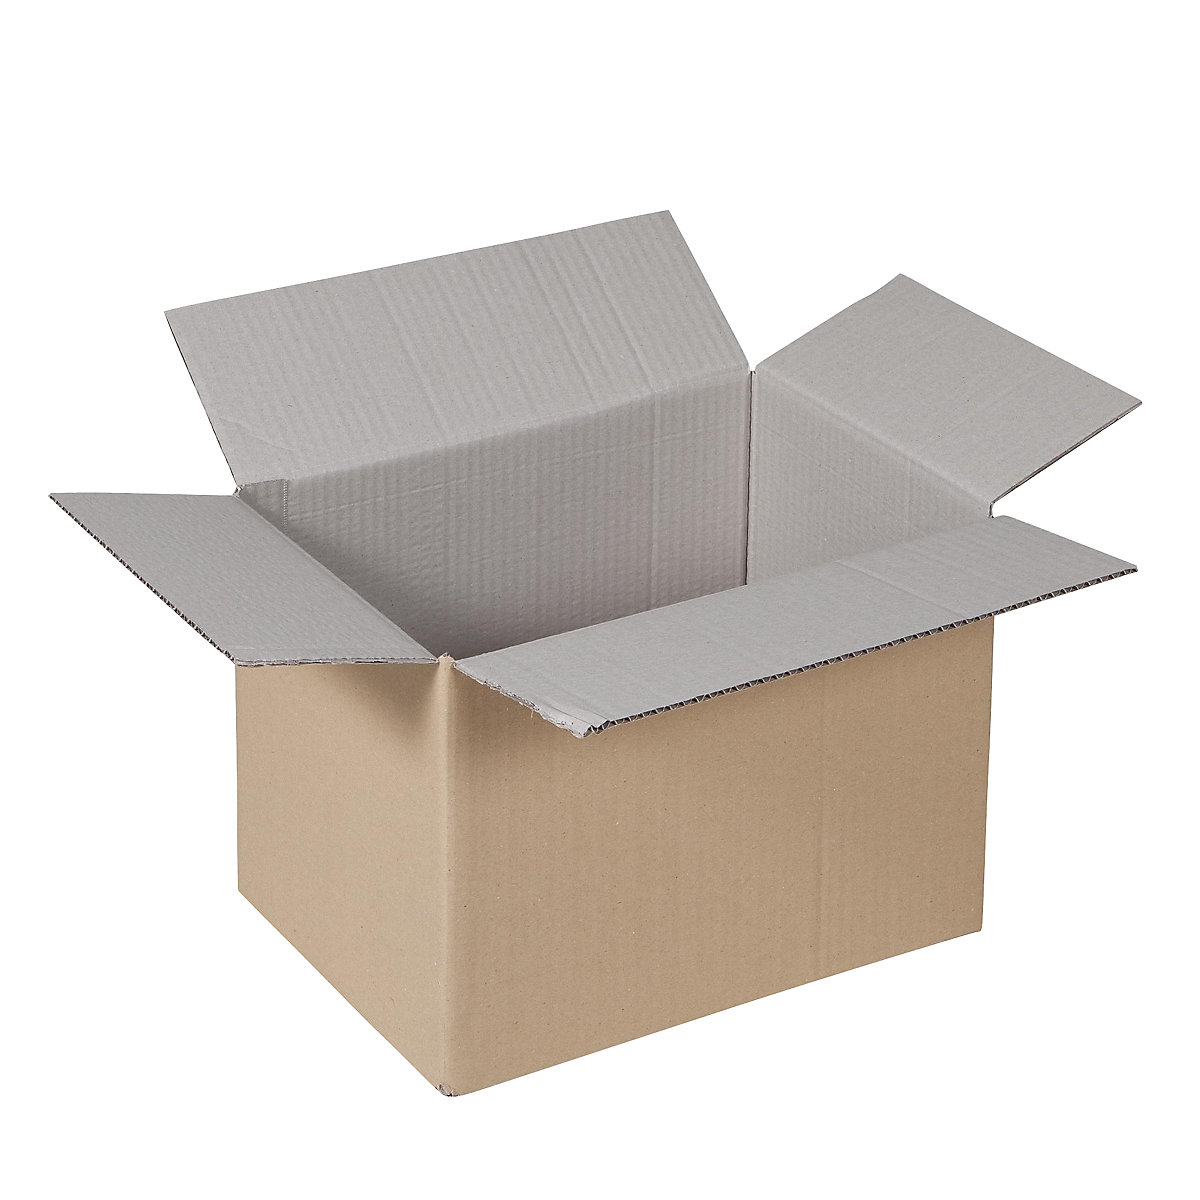 Sklopiva kartonska kutija, FEFCO 0201, od 1-valnog kartona, unutarnje dimenzije 350 x 230 x 240 mm, pak. 50 kom.-3